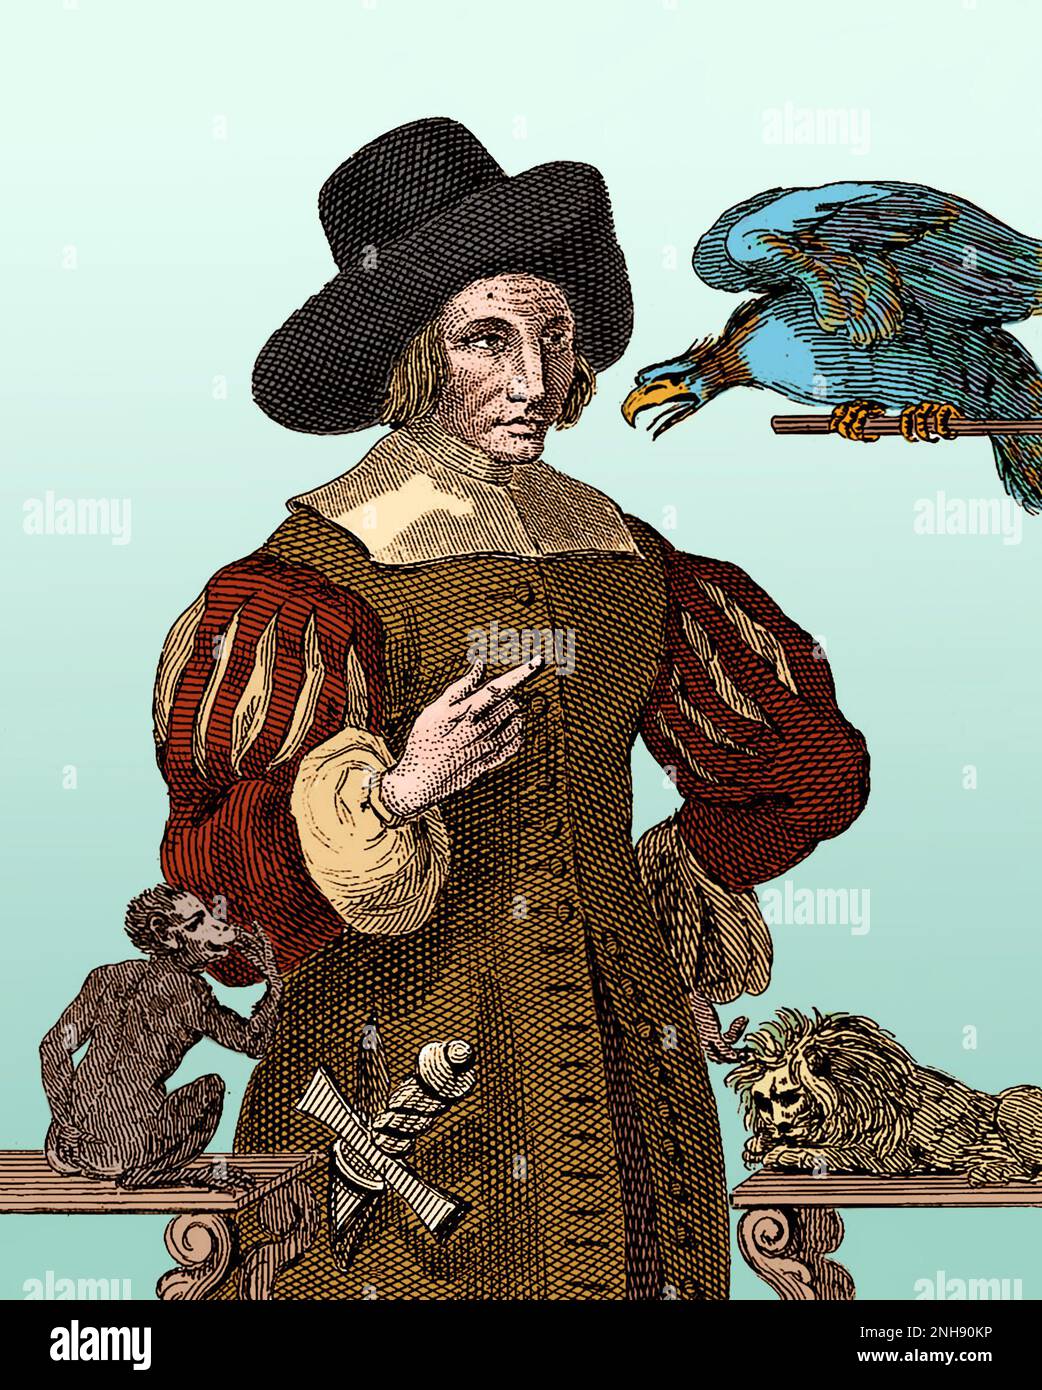 Mary Frith (ca. 1584-1659), auch bekannt als Moll (oder Mal) Cutpurse, war eine berüchtigte Taschendiebin und Zaun der Londoner Unterwelt. Sie trug Männerkleidung, behielt Papageien, züchtete Mastiffs und war die erste englische Frau, die bekannt war, zu rauchen. Mehrere Stücke über sie wurden zu ihrem Leben geschrieben. Das Leben von Mrs. Mary Frith, eine sensationalisierte Biografie, die drei Jahre nach ihrem Tod geschrieben wurde, half, sie zu mythologisieren. Aus der „Sammlung von 400 Porträts bemerkenswerter, exzentrischer und berüchtigter Persönlichkeiten“, ca. 1880. Gefärbt. Stockfoto